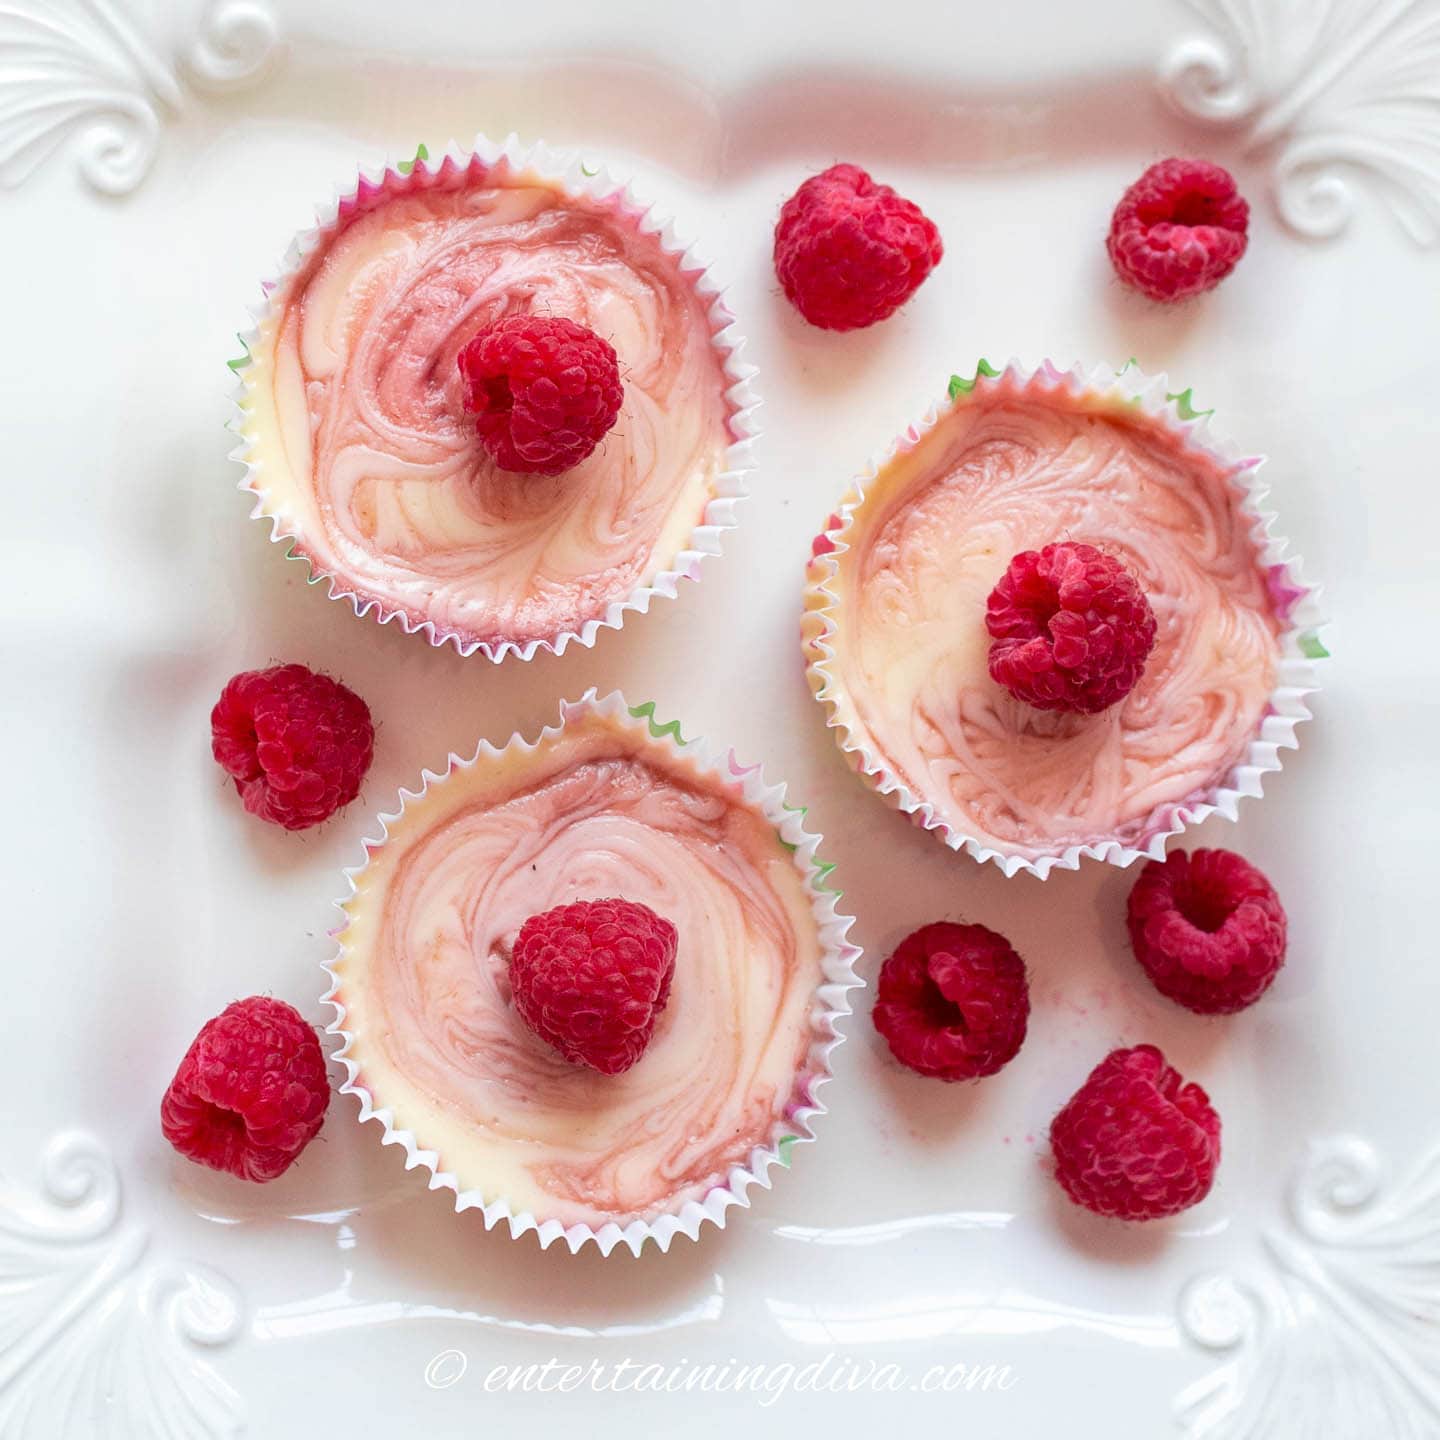 Three raspberry swirl mini cheesecakes on a white plate with raspberries